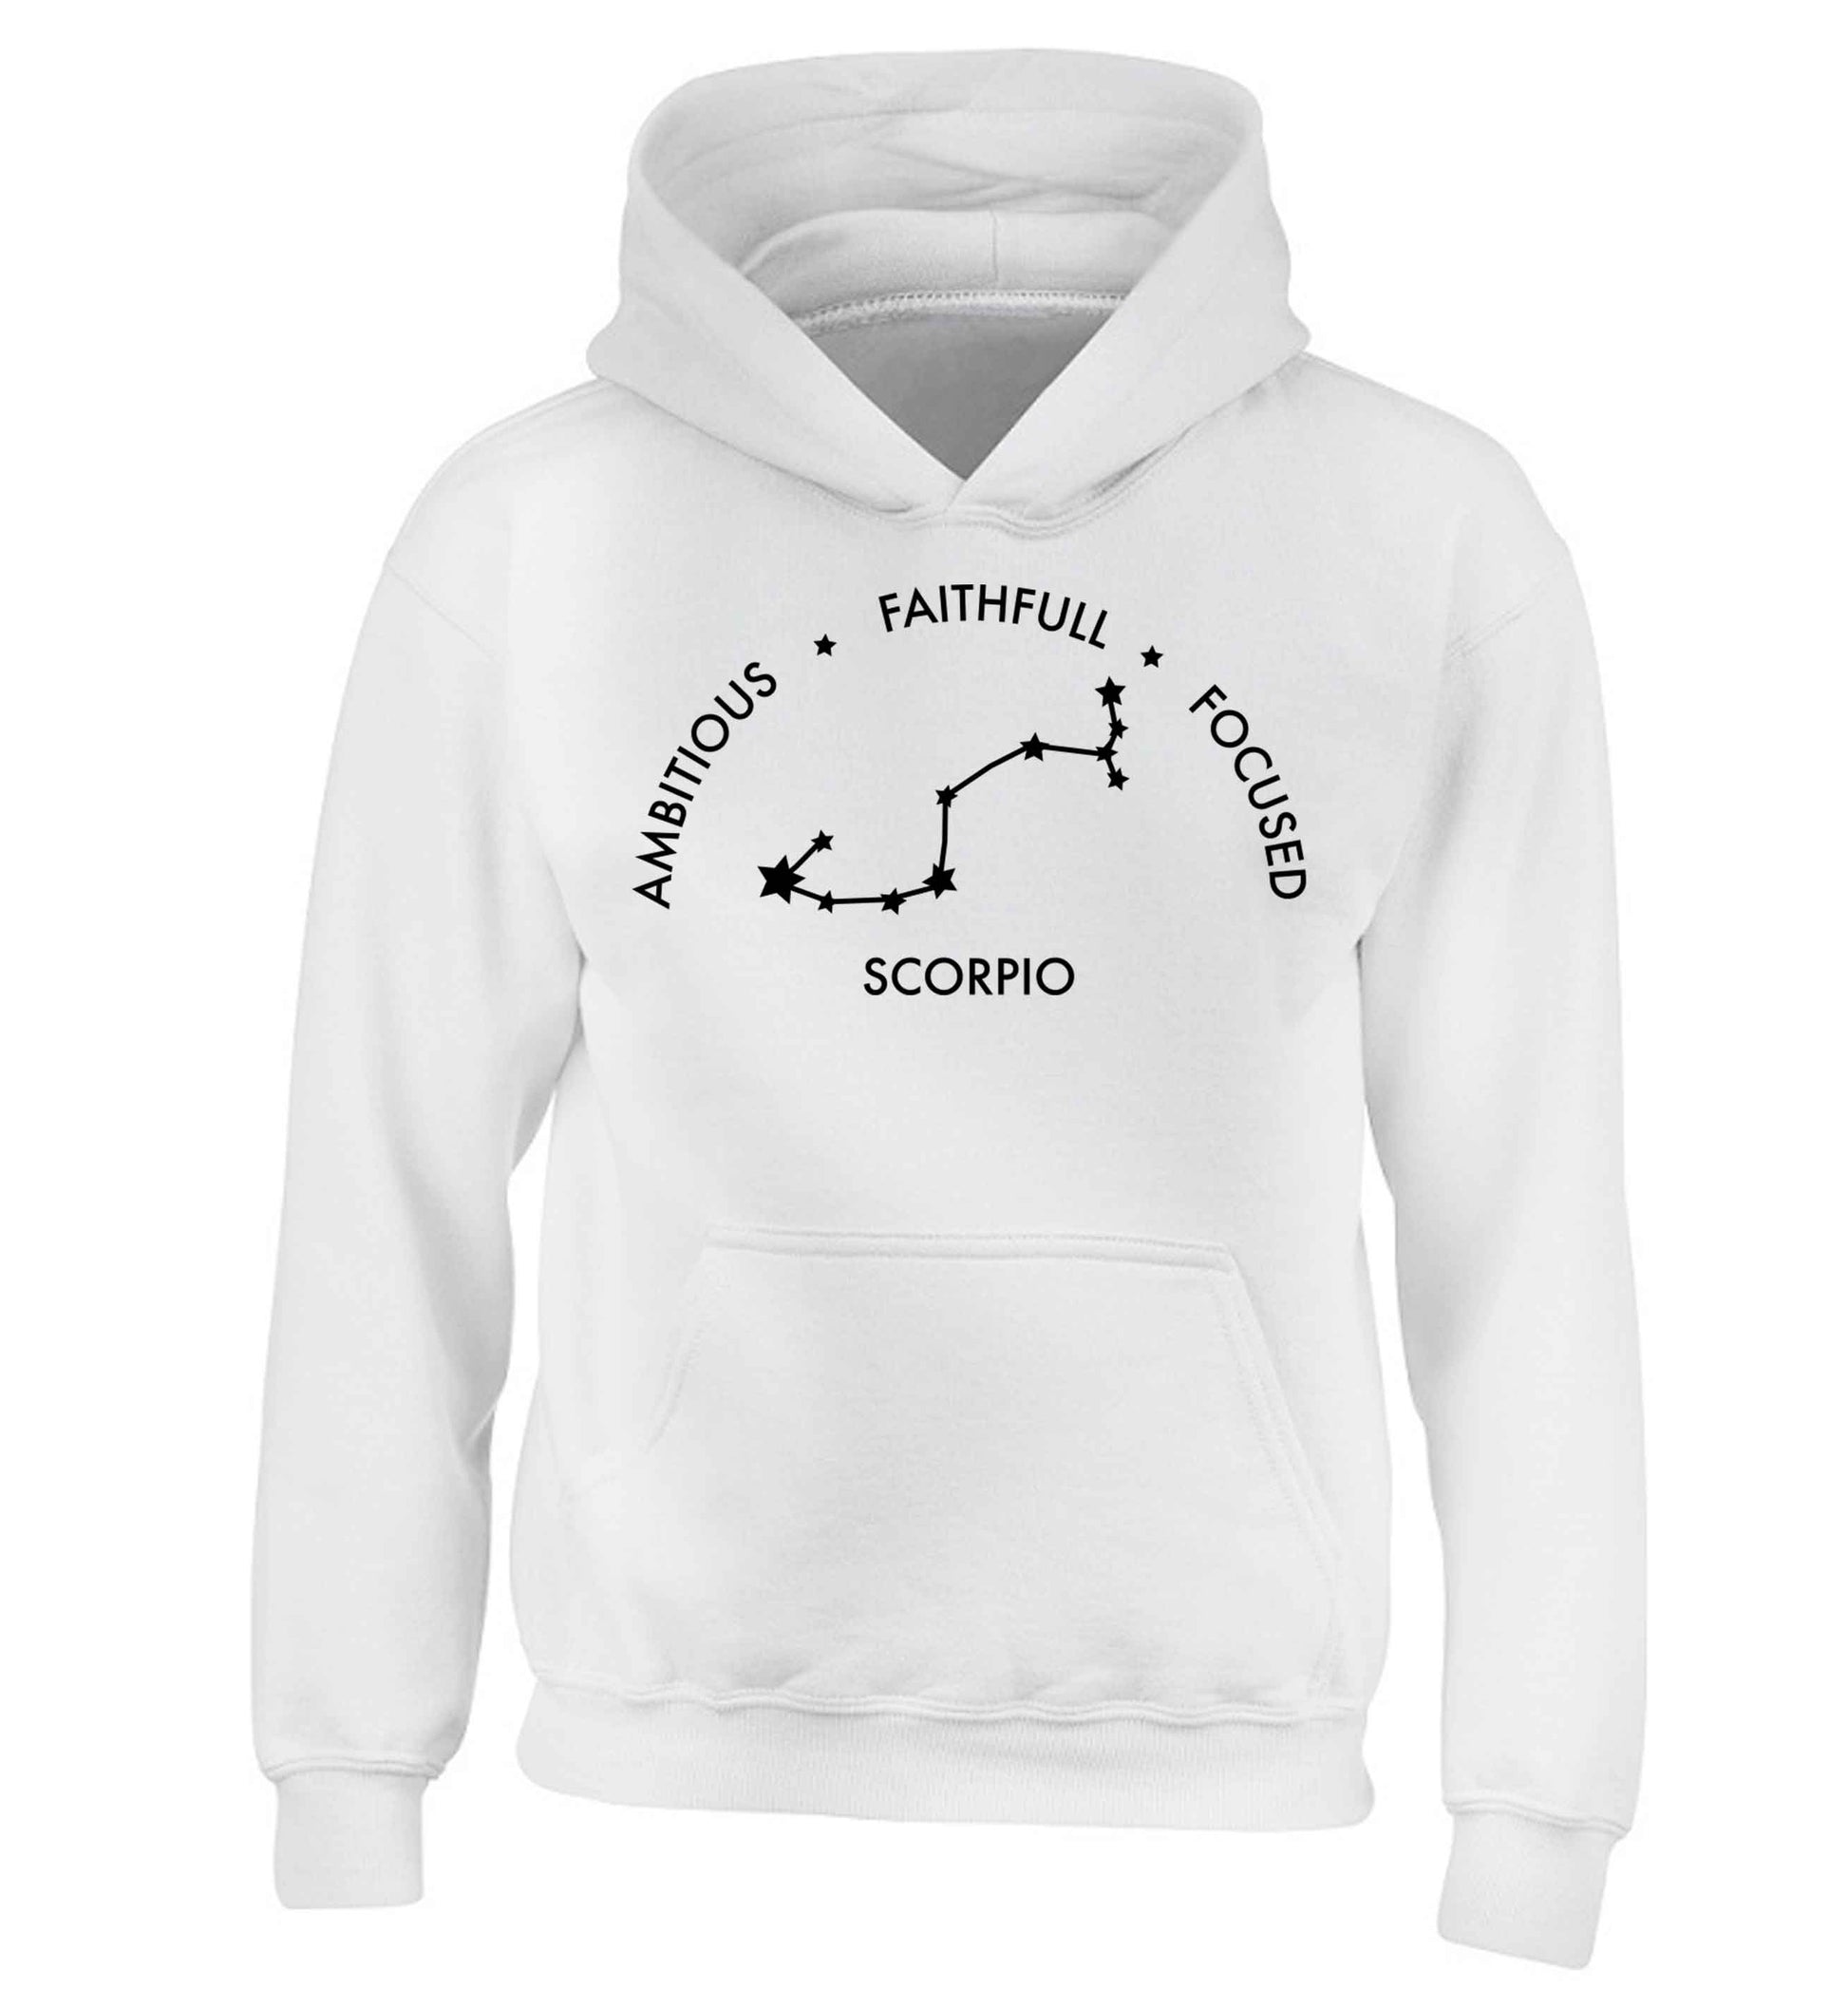 Scorpio, ambitious, faithfull, focused children's white hoodie 12-13 Years